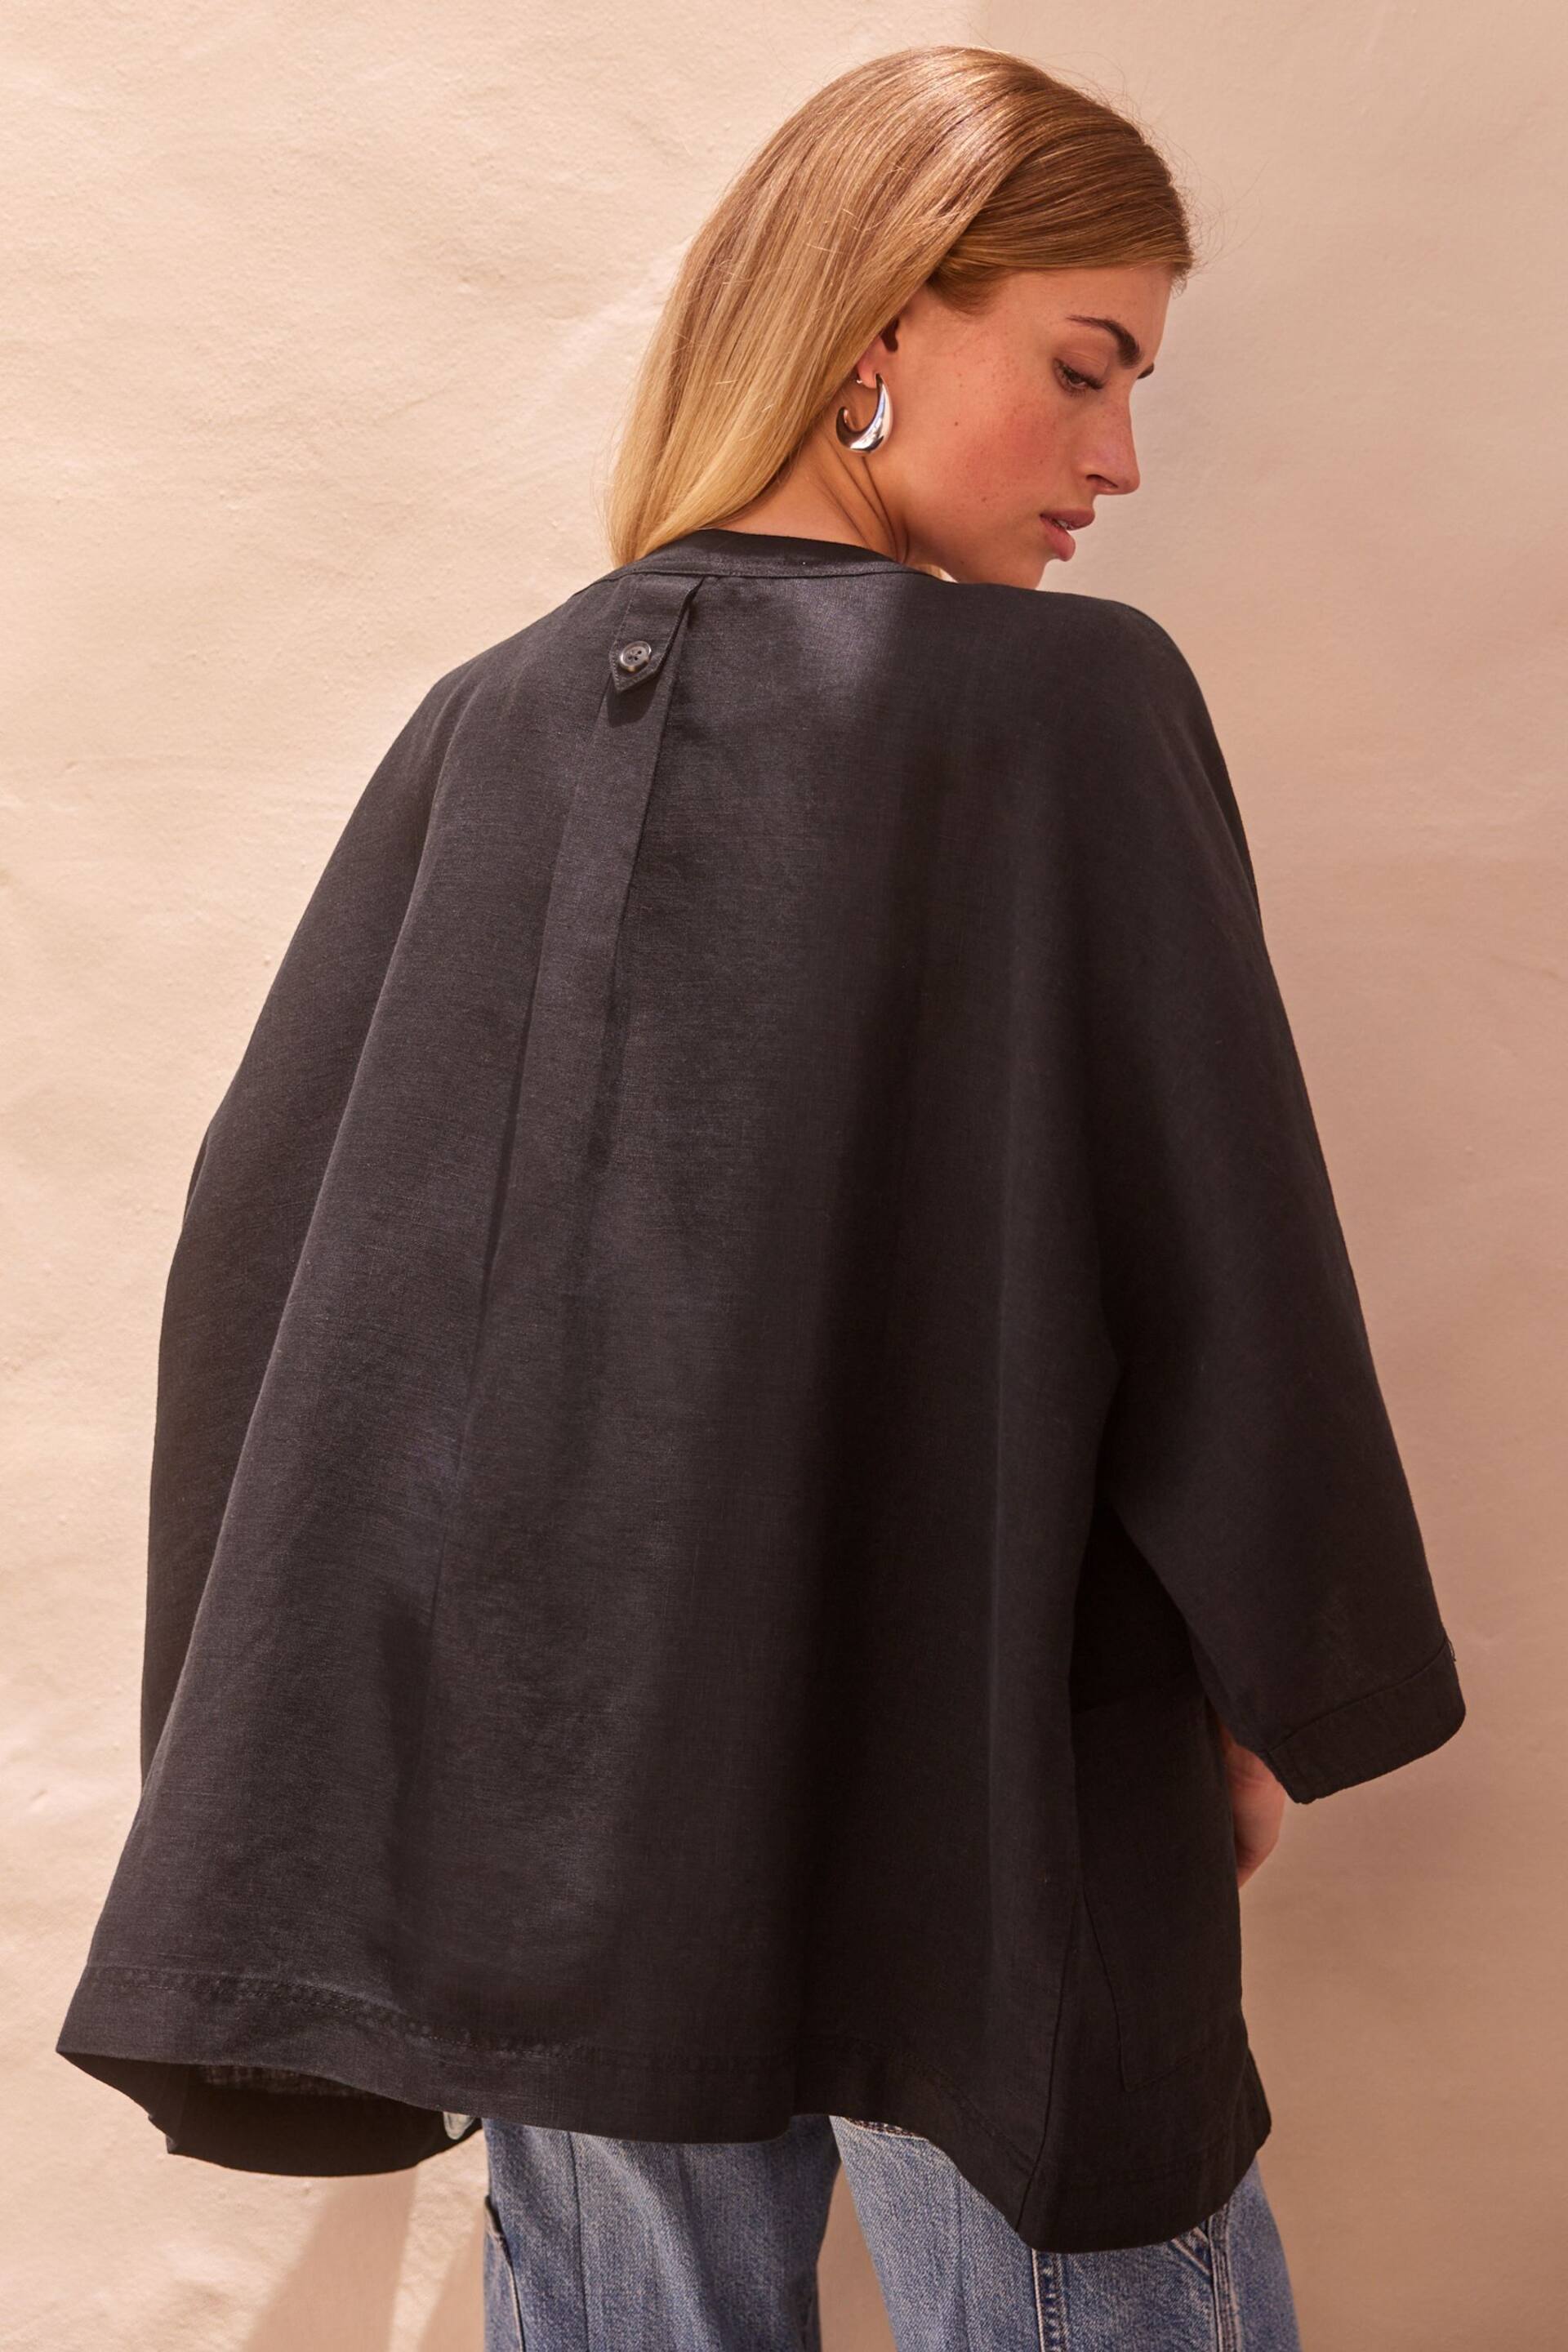 Black 100% Linen Jacket - Image 6 of 7